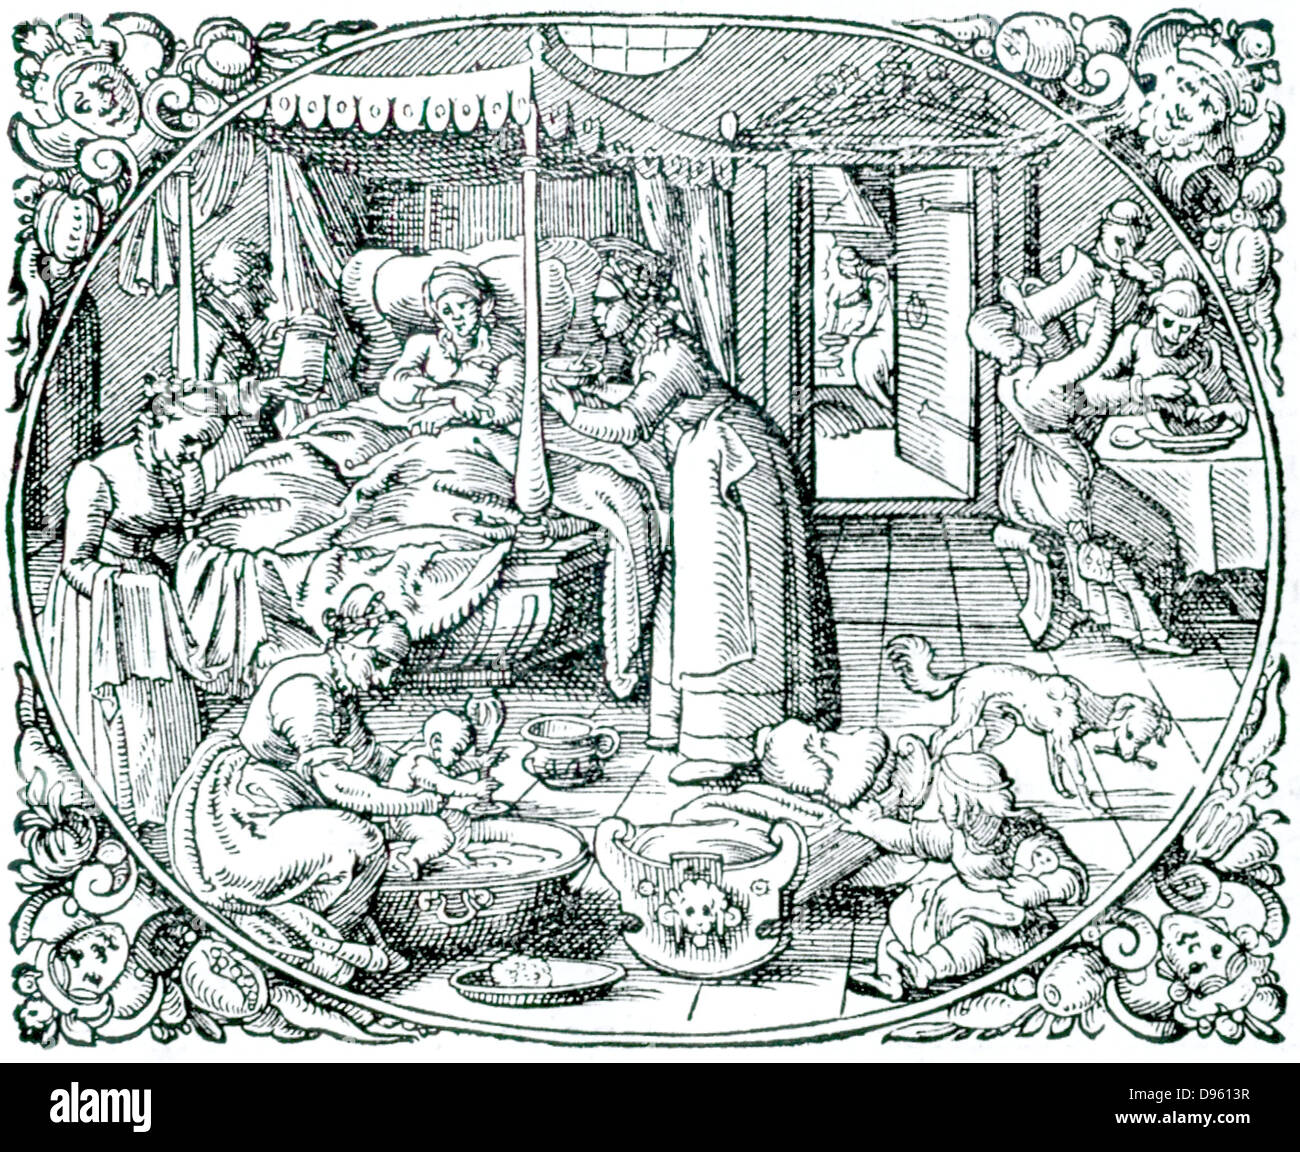 Eine Entbindung mit kompletten Mangel an Hygiene mit Menschen Essen und Trinken, ein Kind zu spielen, und ein Hund einen Knochen nagen, alle im gleichen Raum, in dem ein Baby gerade geliefert worden ist. Von Plinius' Naturalem Historiam", Frankfurt am Main, 1582. Holzschnitt. Stockfoto